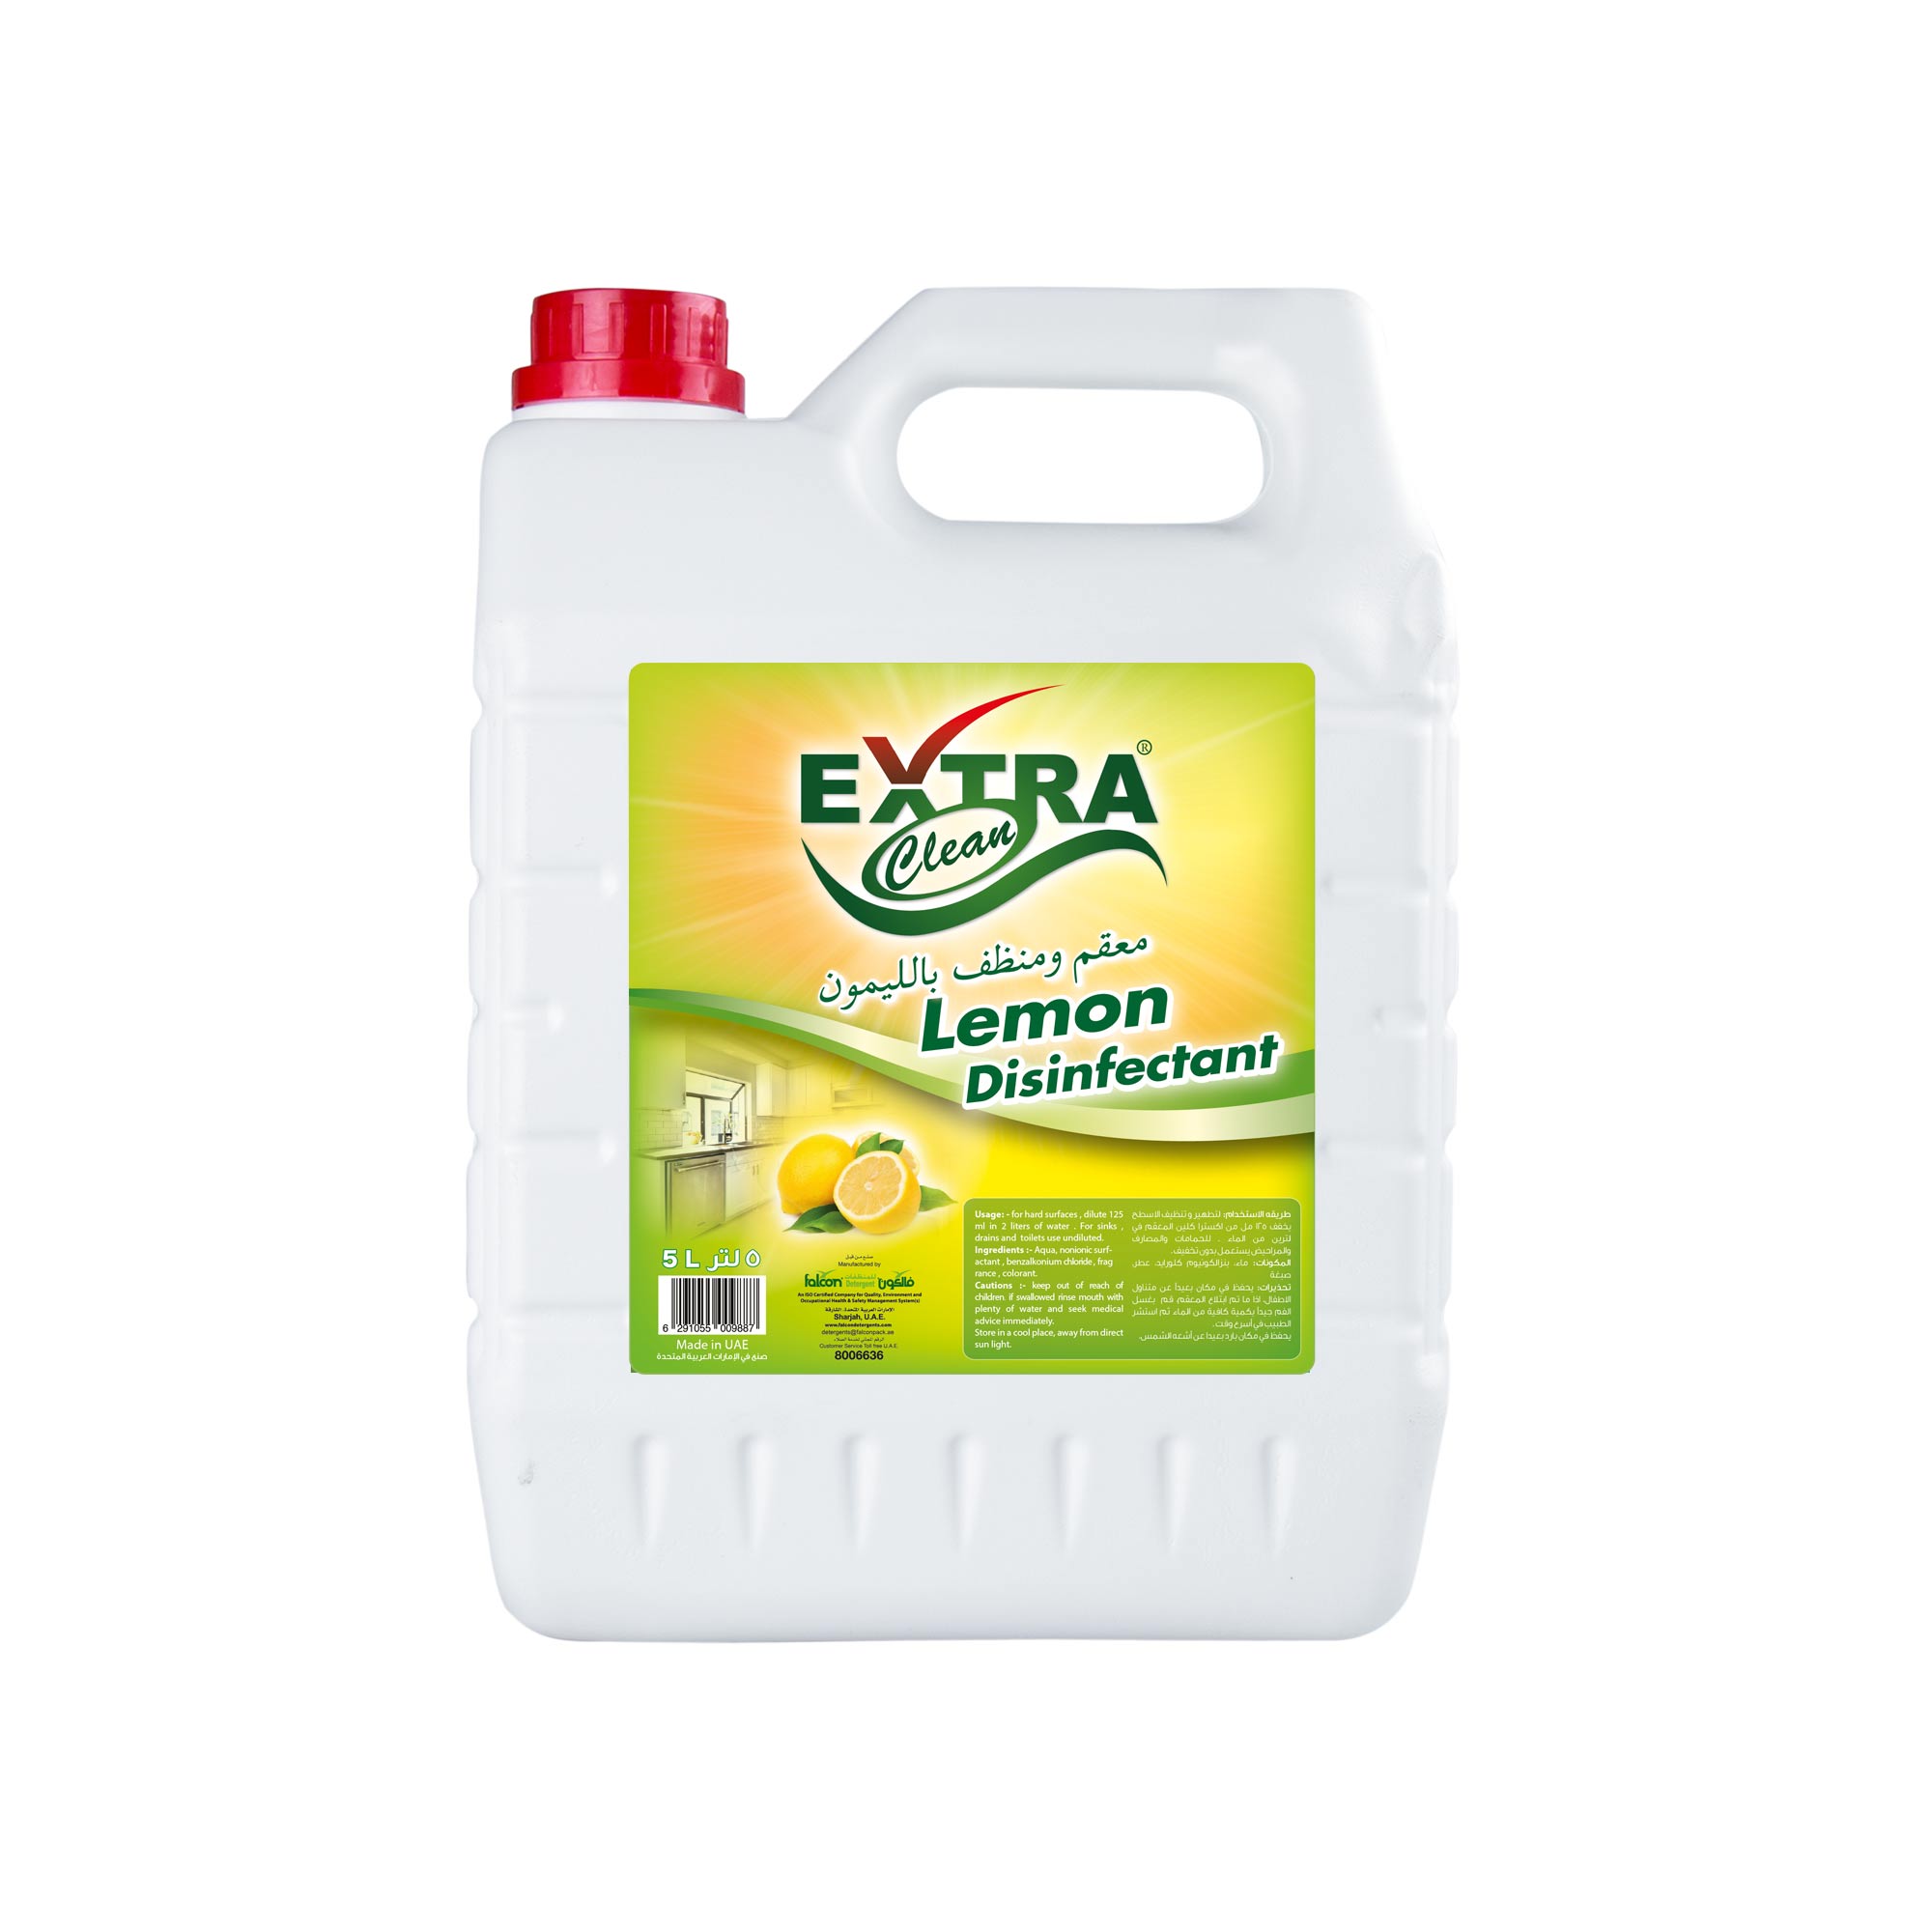 Extra clean Disinfectant Liquid (Lemon)